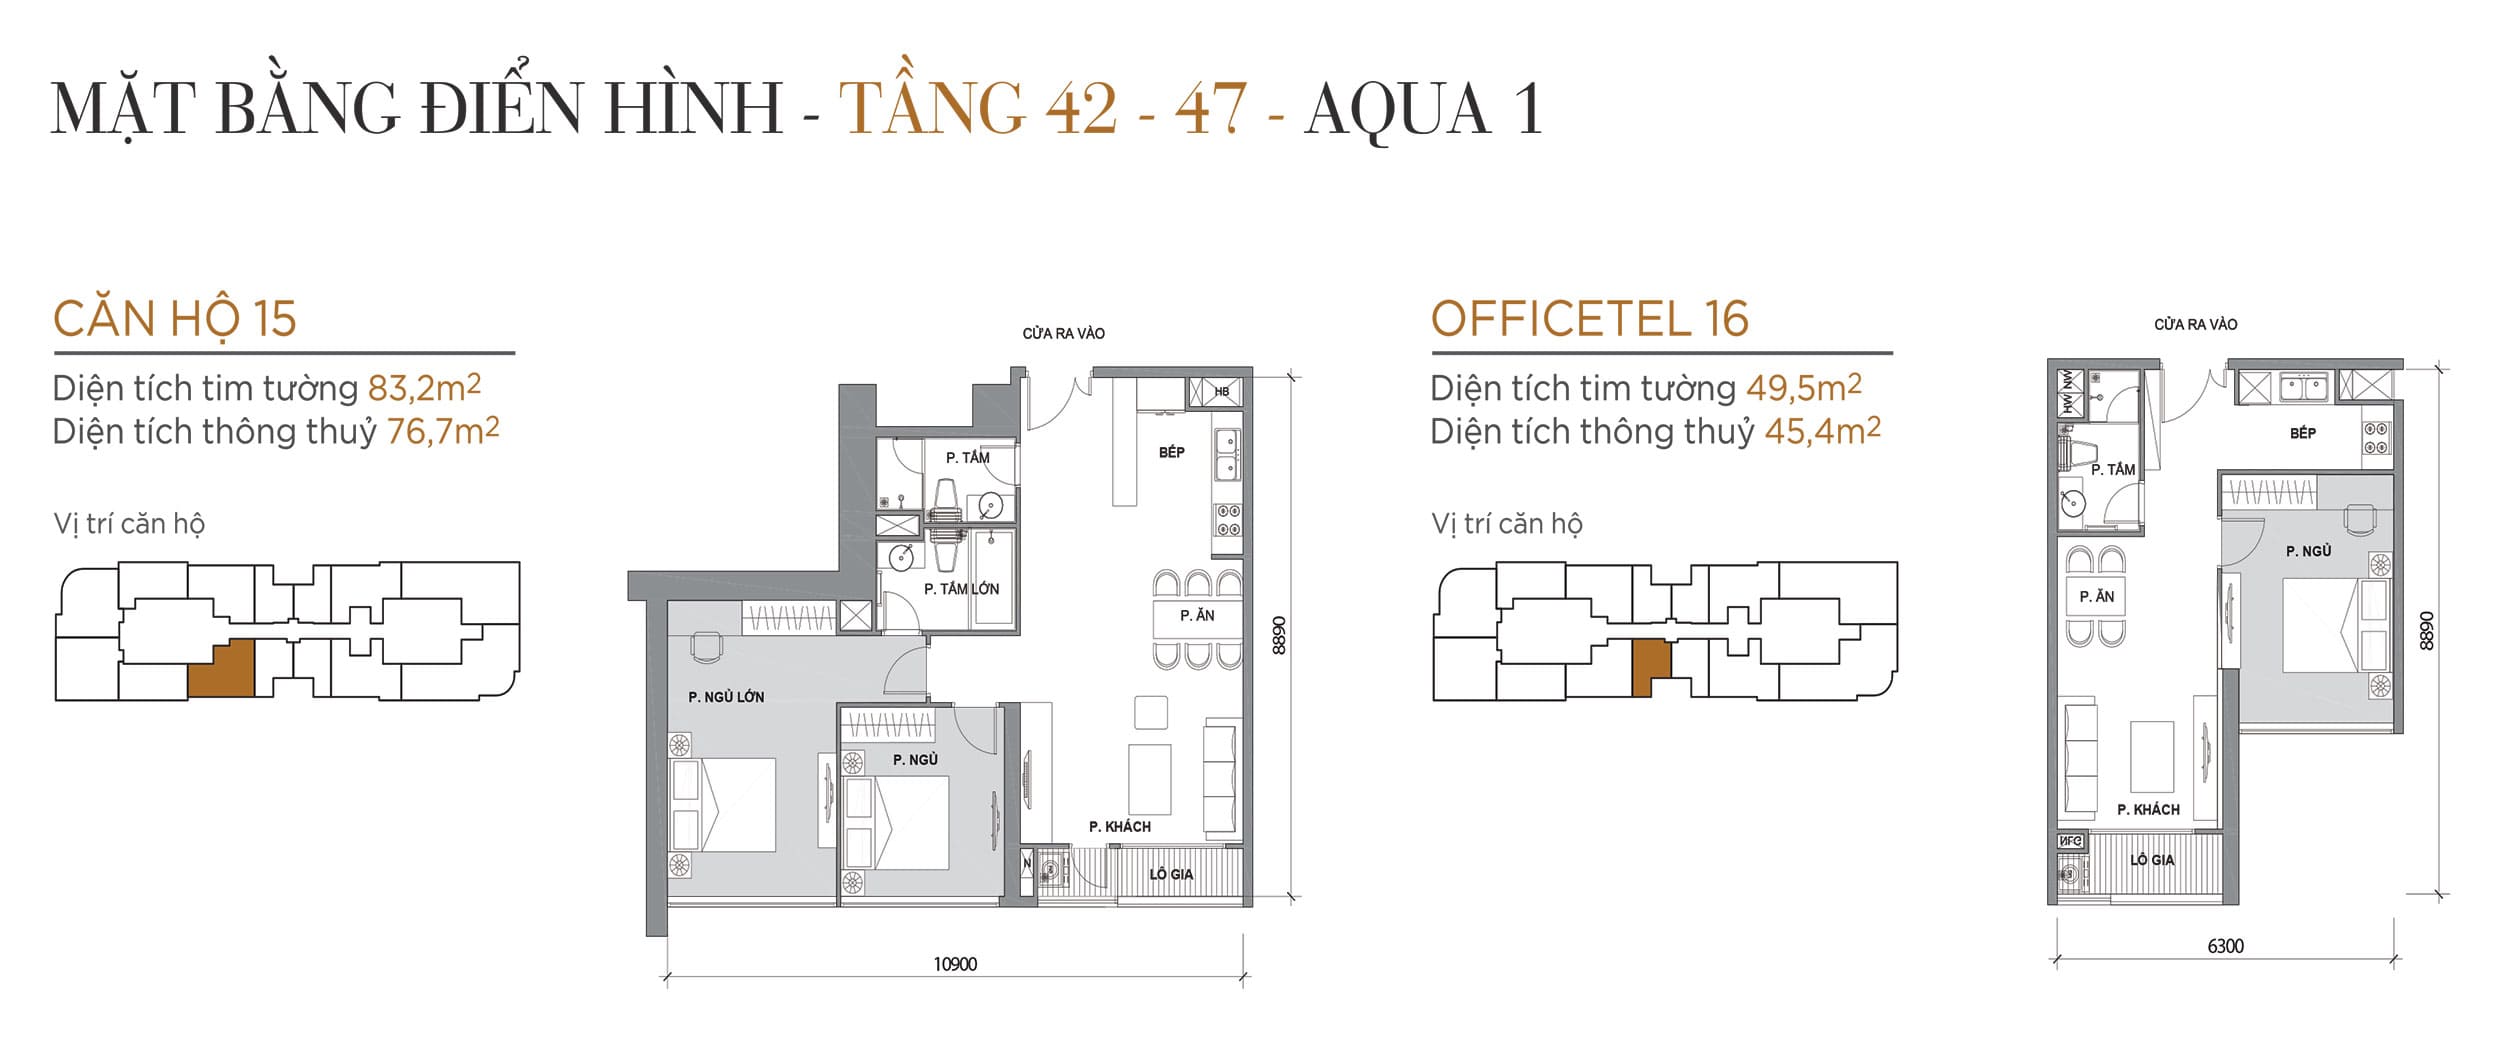 Layout thiết kế điển hình Tầng 42 đến Tầng 47 Tòa Aqua 1 loại Căn hộ 15, Officetel 16.